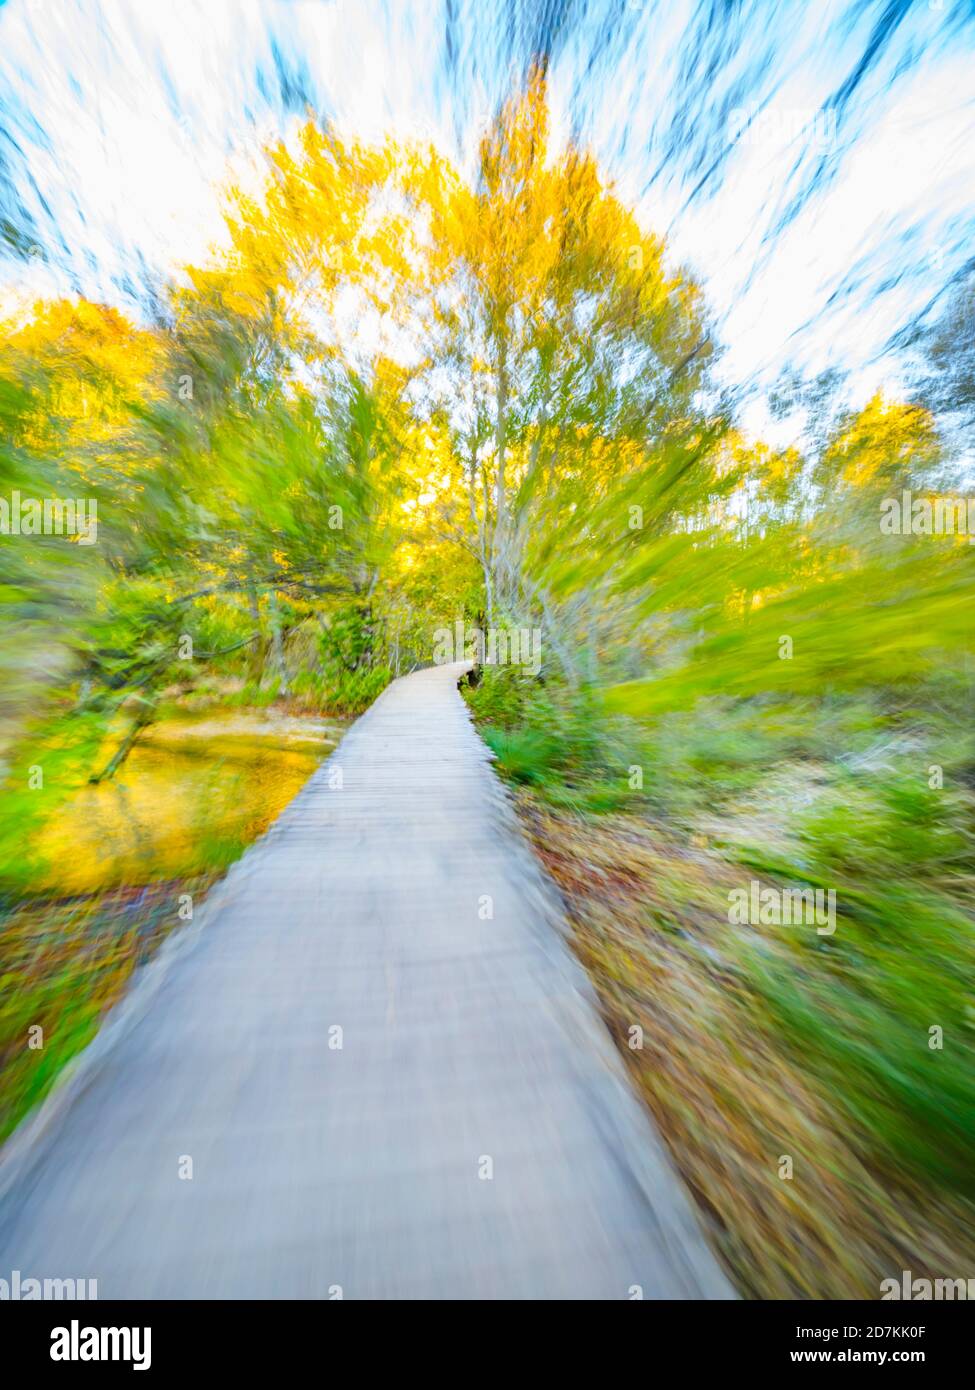 Sentiero in legno percorso laghi Plitvice in Croazia Europa artistica scenario creativo volutamente sfocato che ritrae frenesia e velocità Foto Stock